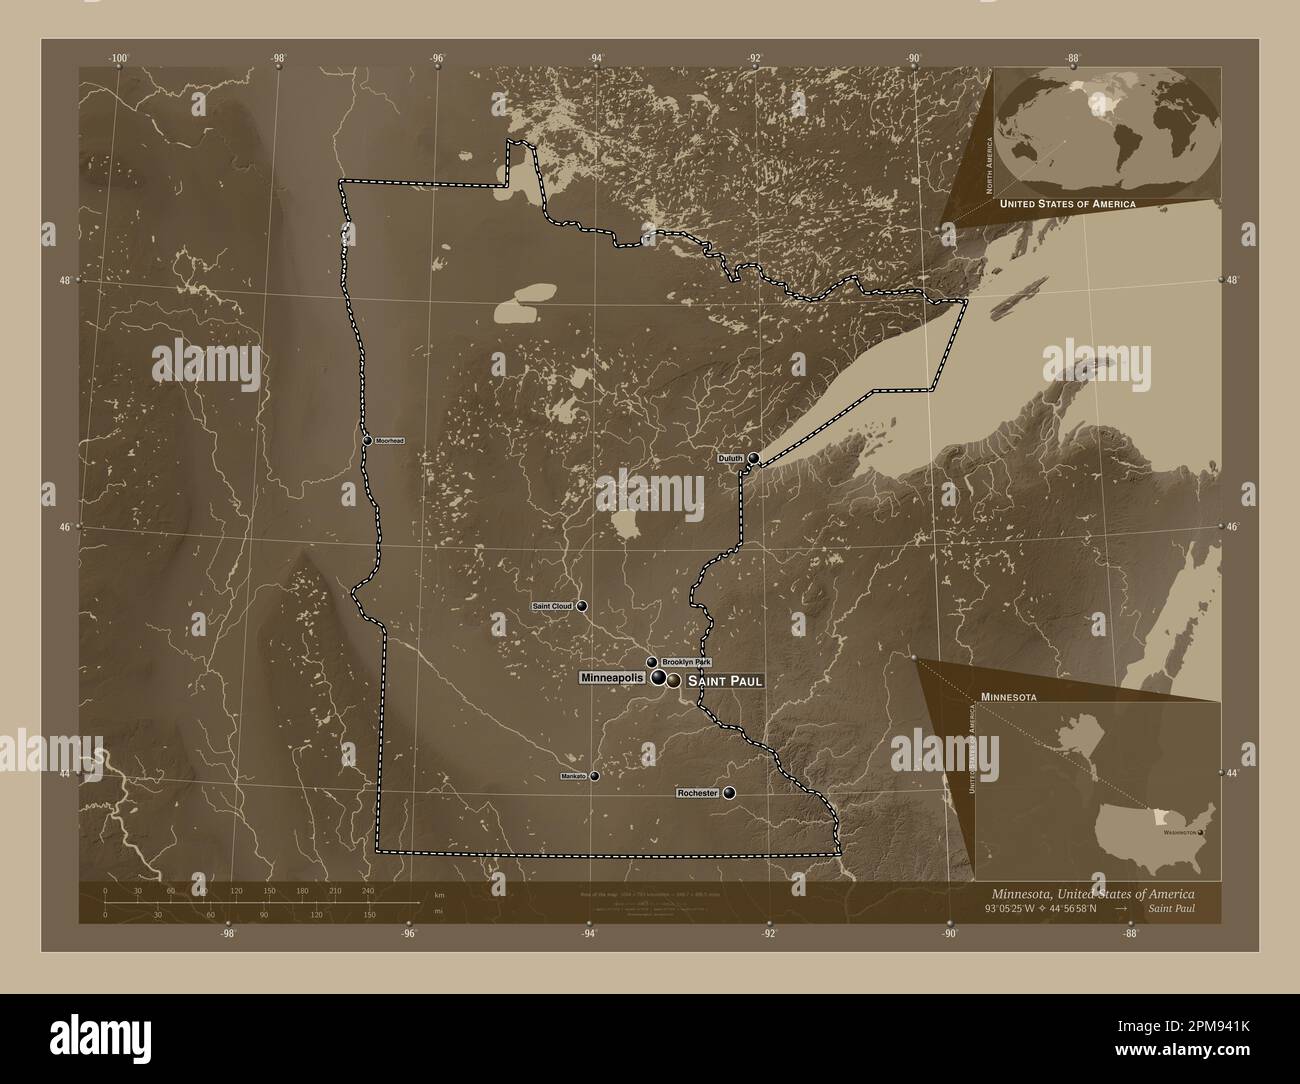 Minnesota, Bundesstaat der Vereinigten Staaten von Amerika. Höhenplan in Sepia-Tönen mit Seen und Flüssen. Standorte und Namen der wichtigsten Städte der r Stockfoto